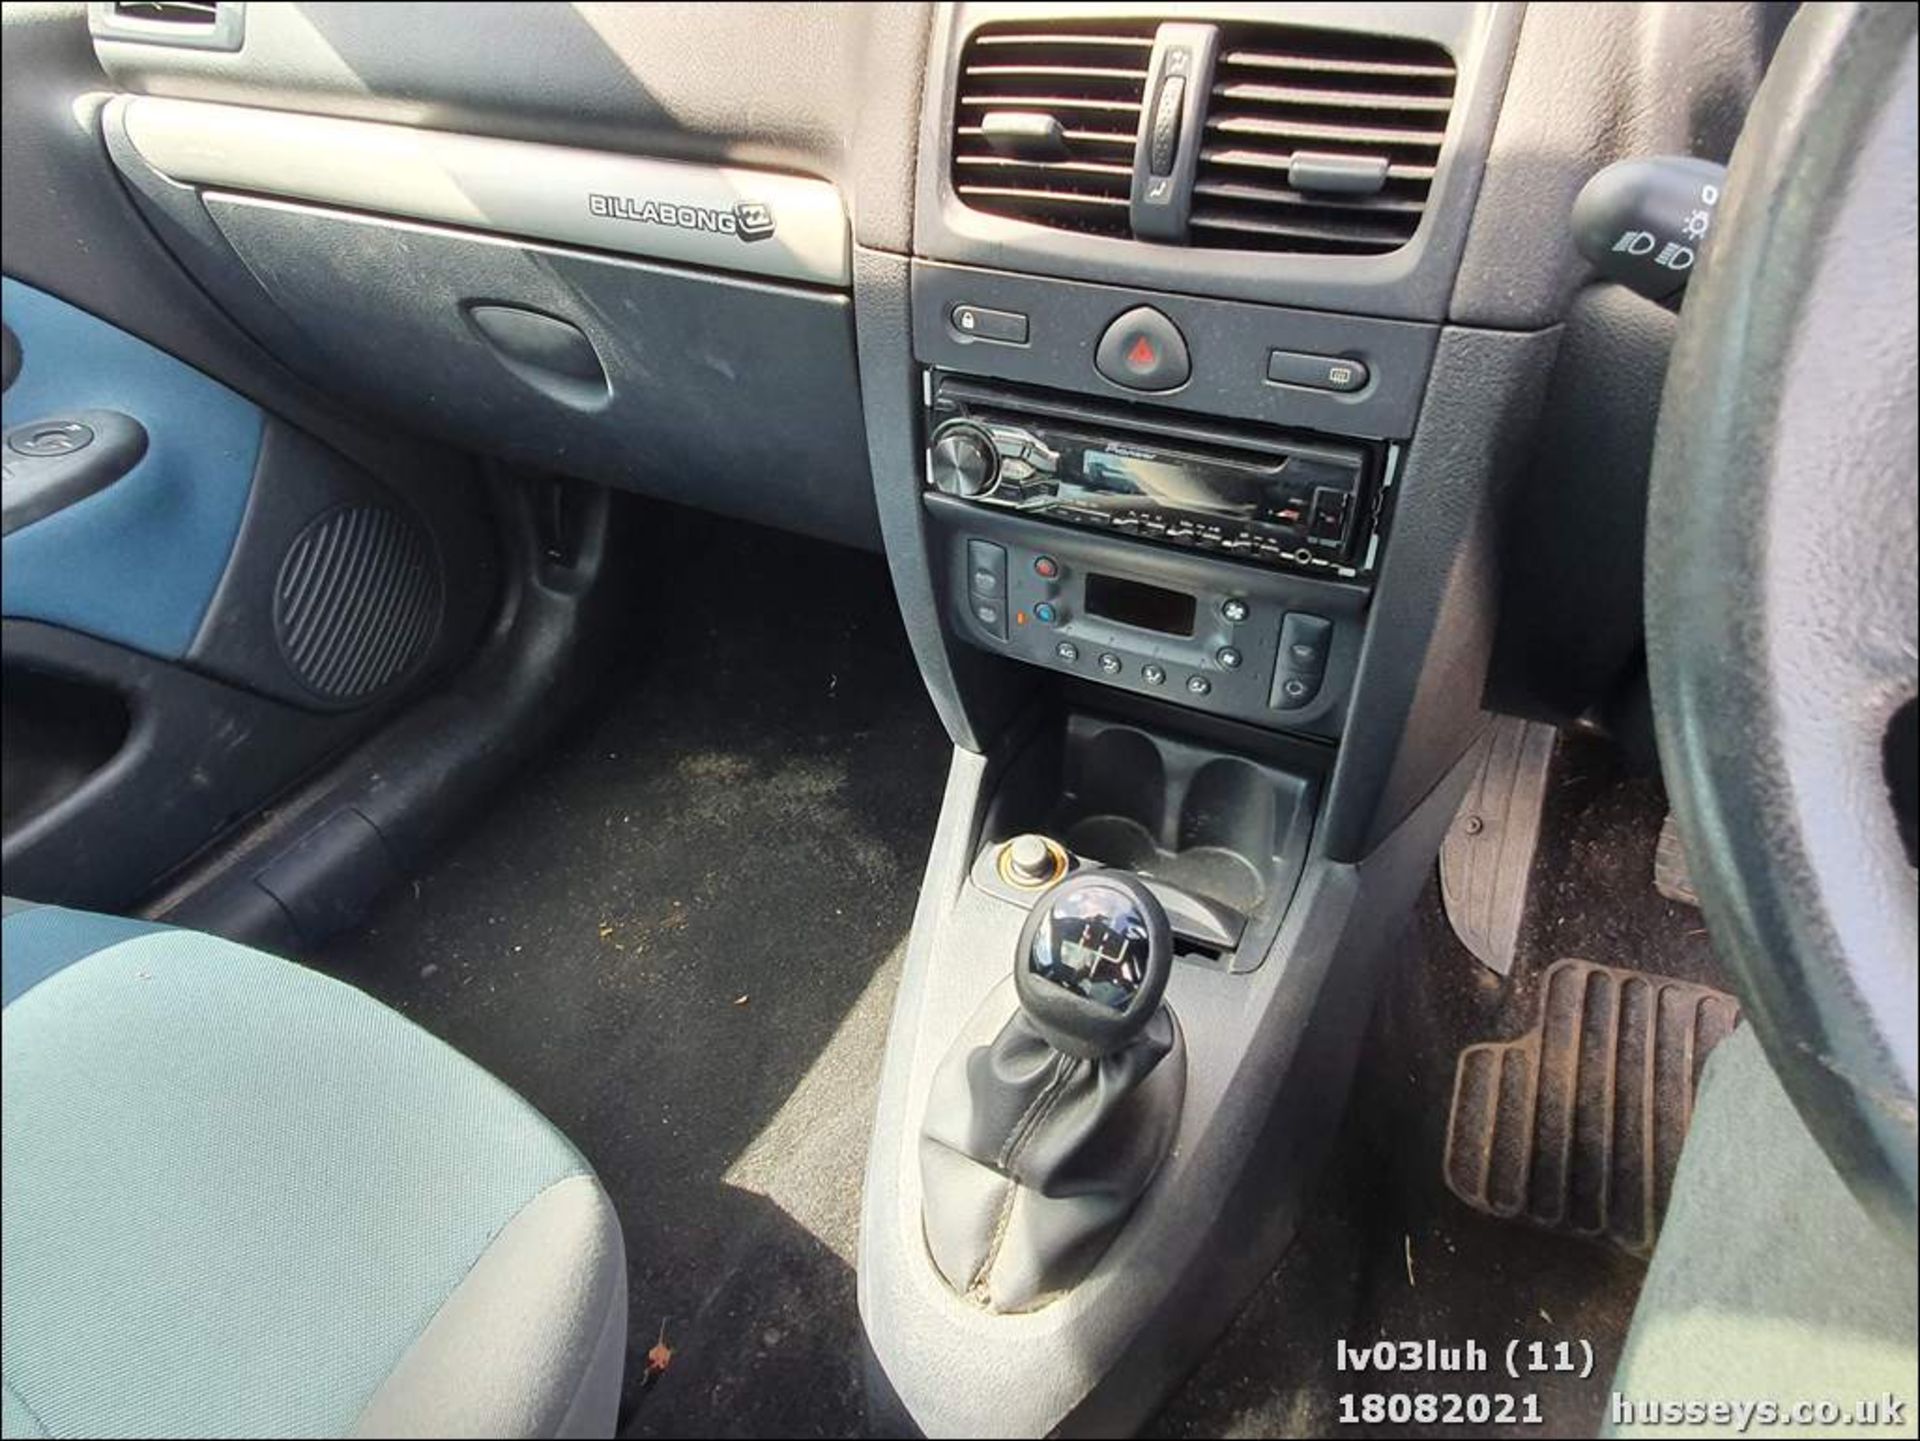 03/03 RENAULT CLIO DYNAM BILLABONG 16V - 1390cc 3dr Hatchback (Blue, 60k) - Image 11 of 14